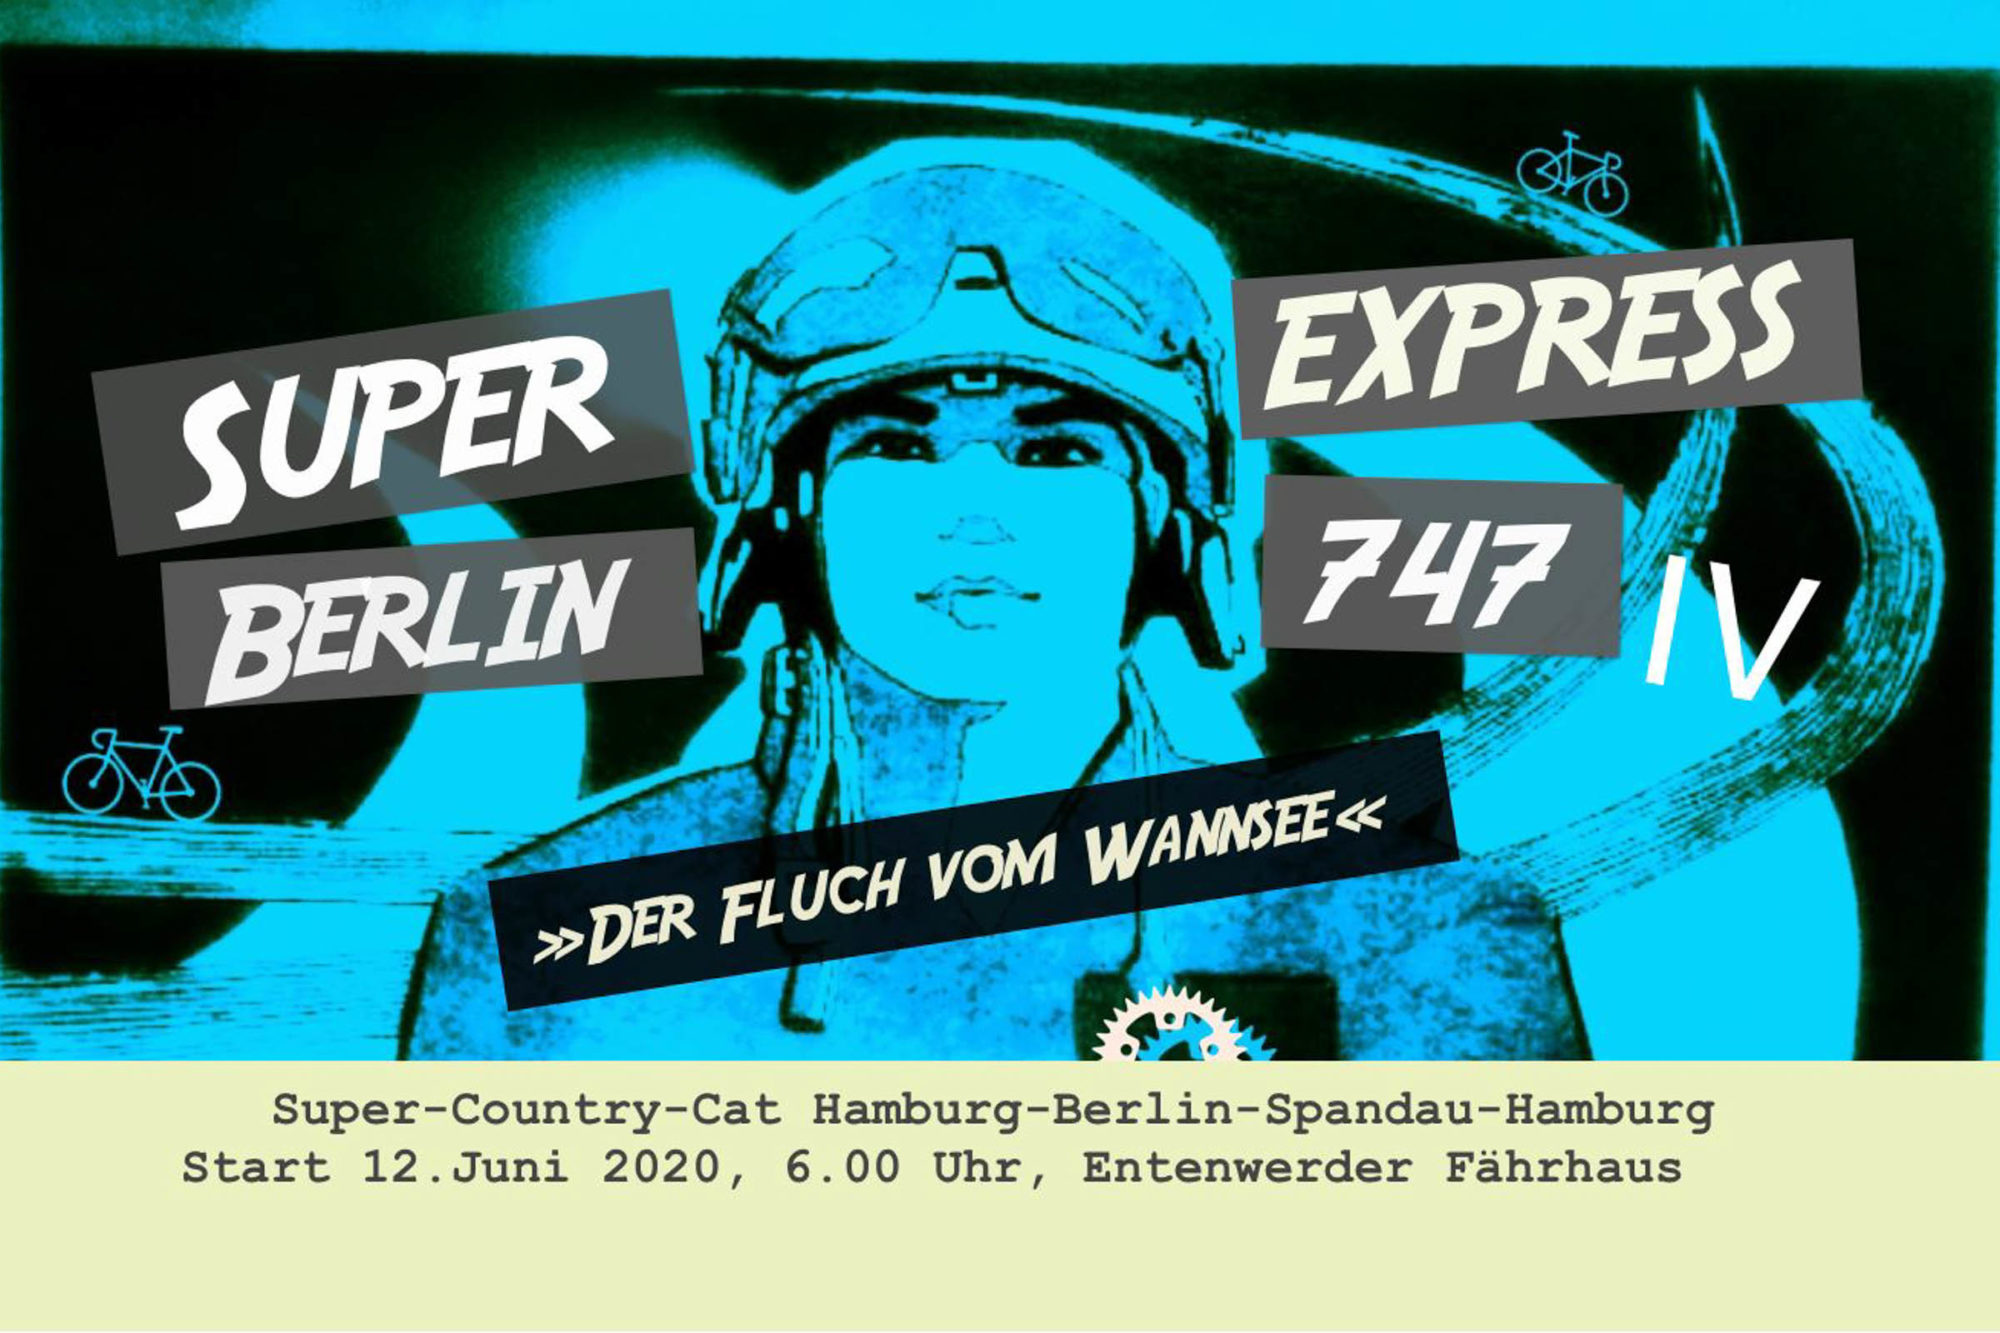 Super Berlin Express 747 Event